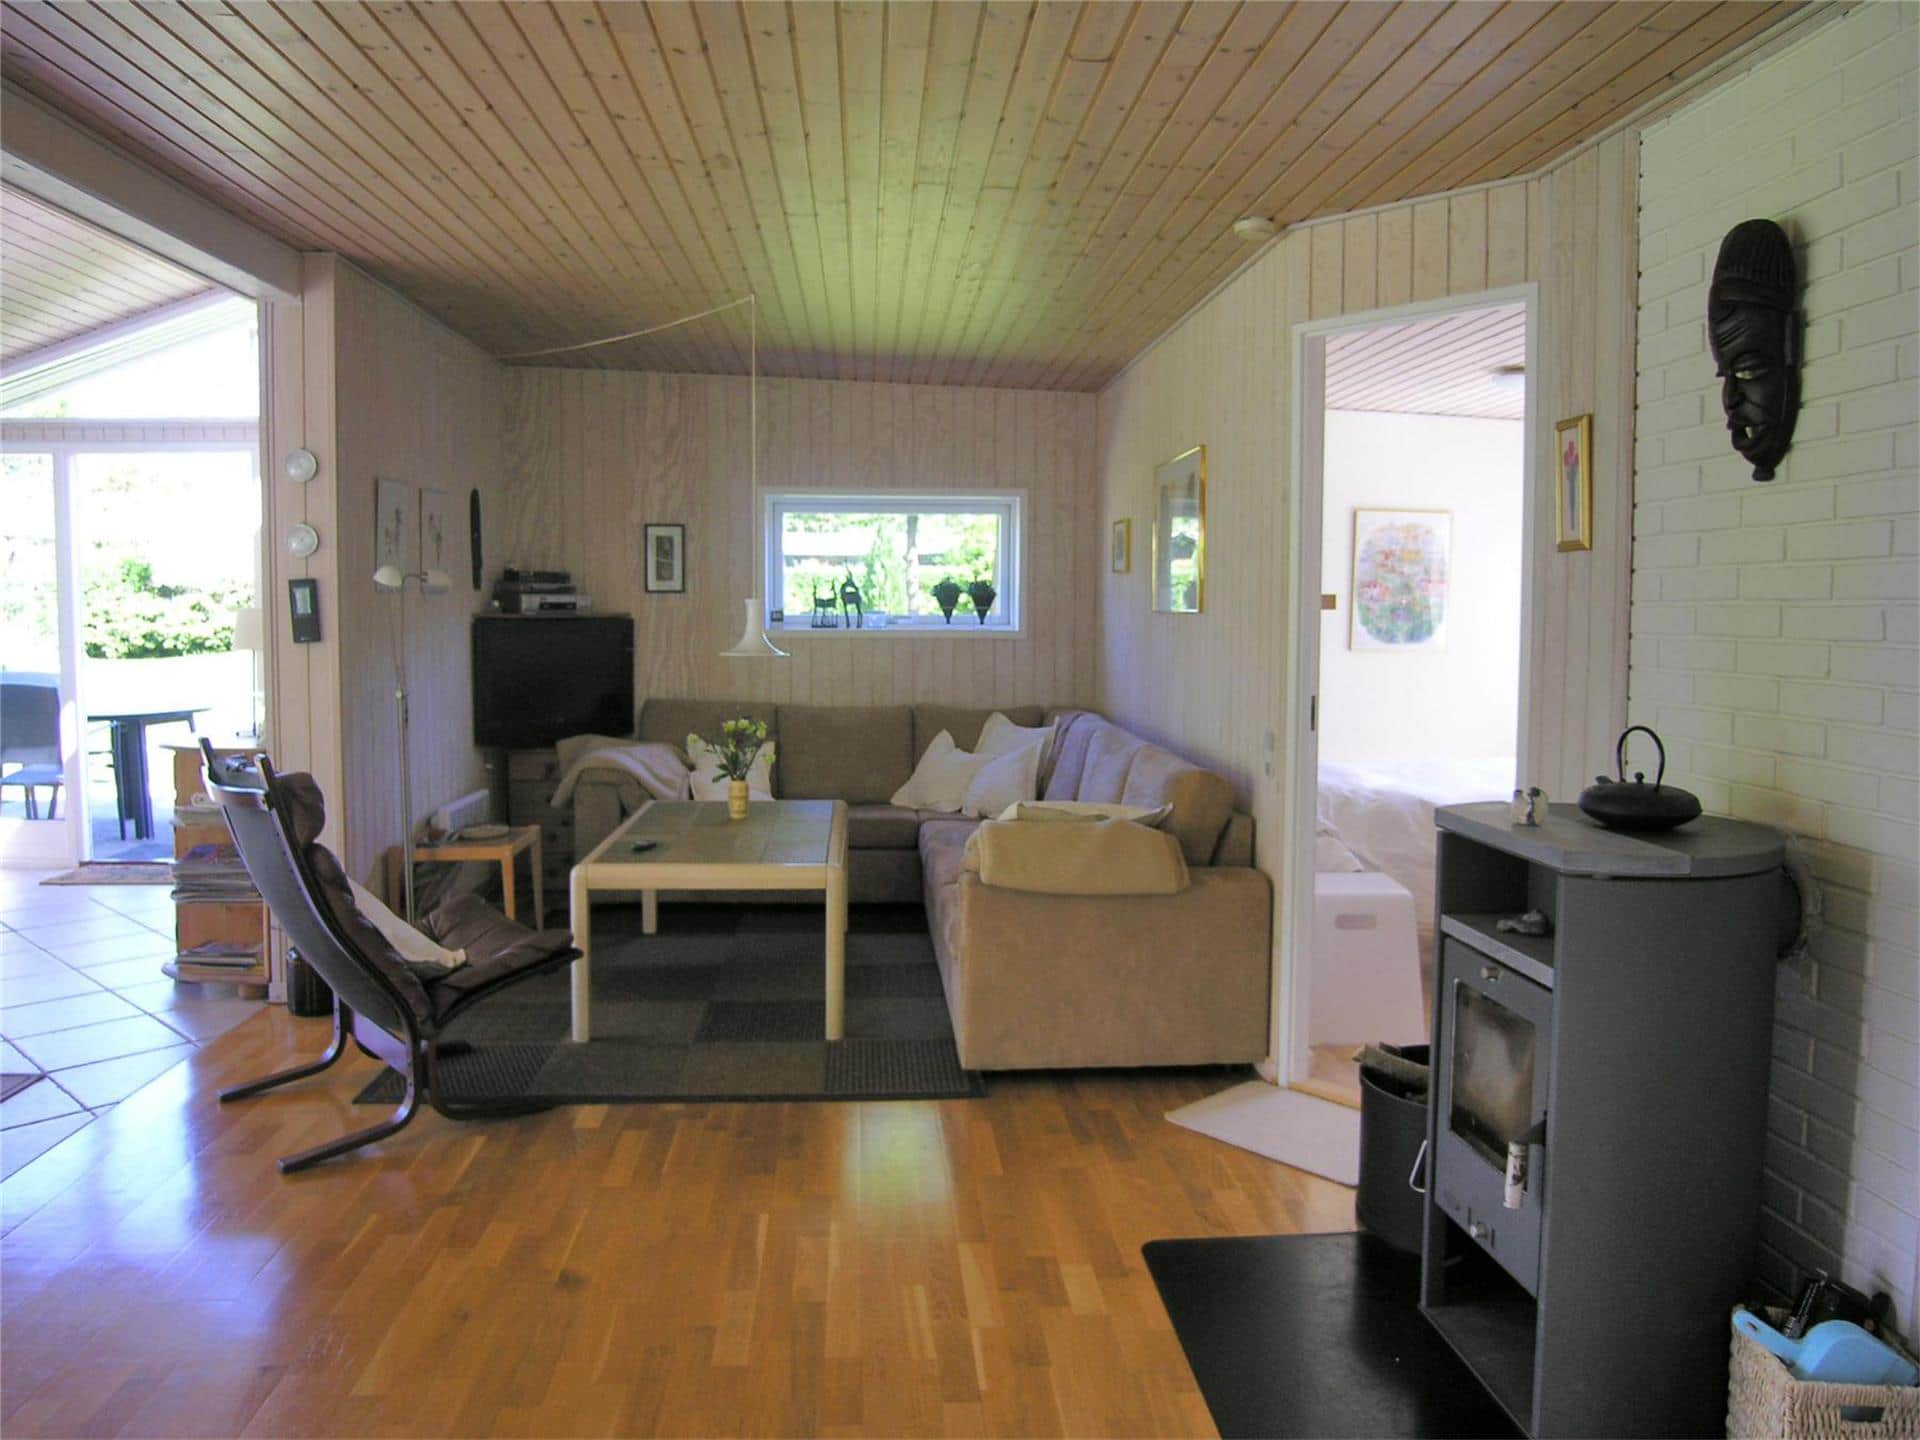 Livingroom 1 Image 3-19 Holiday-home 30360, Skovlunden 22, DK - 8300 Odder